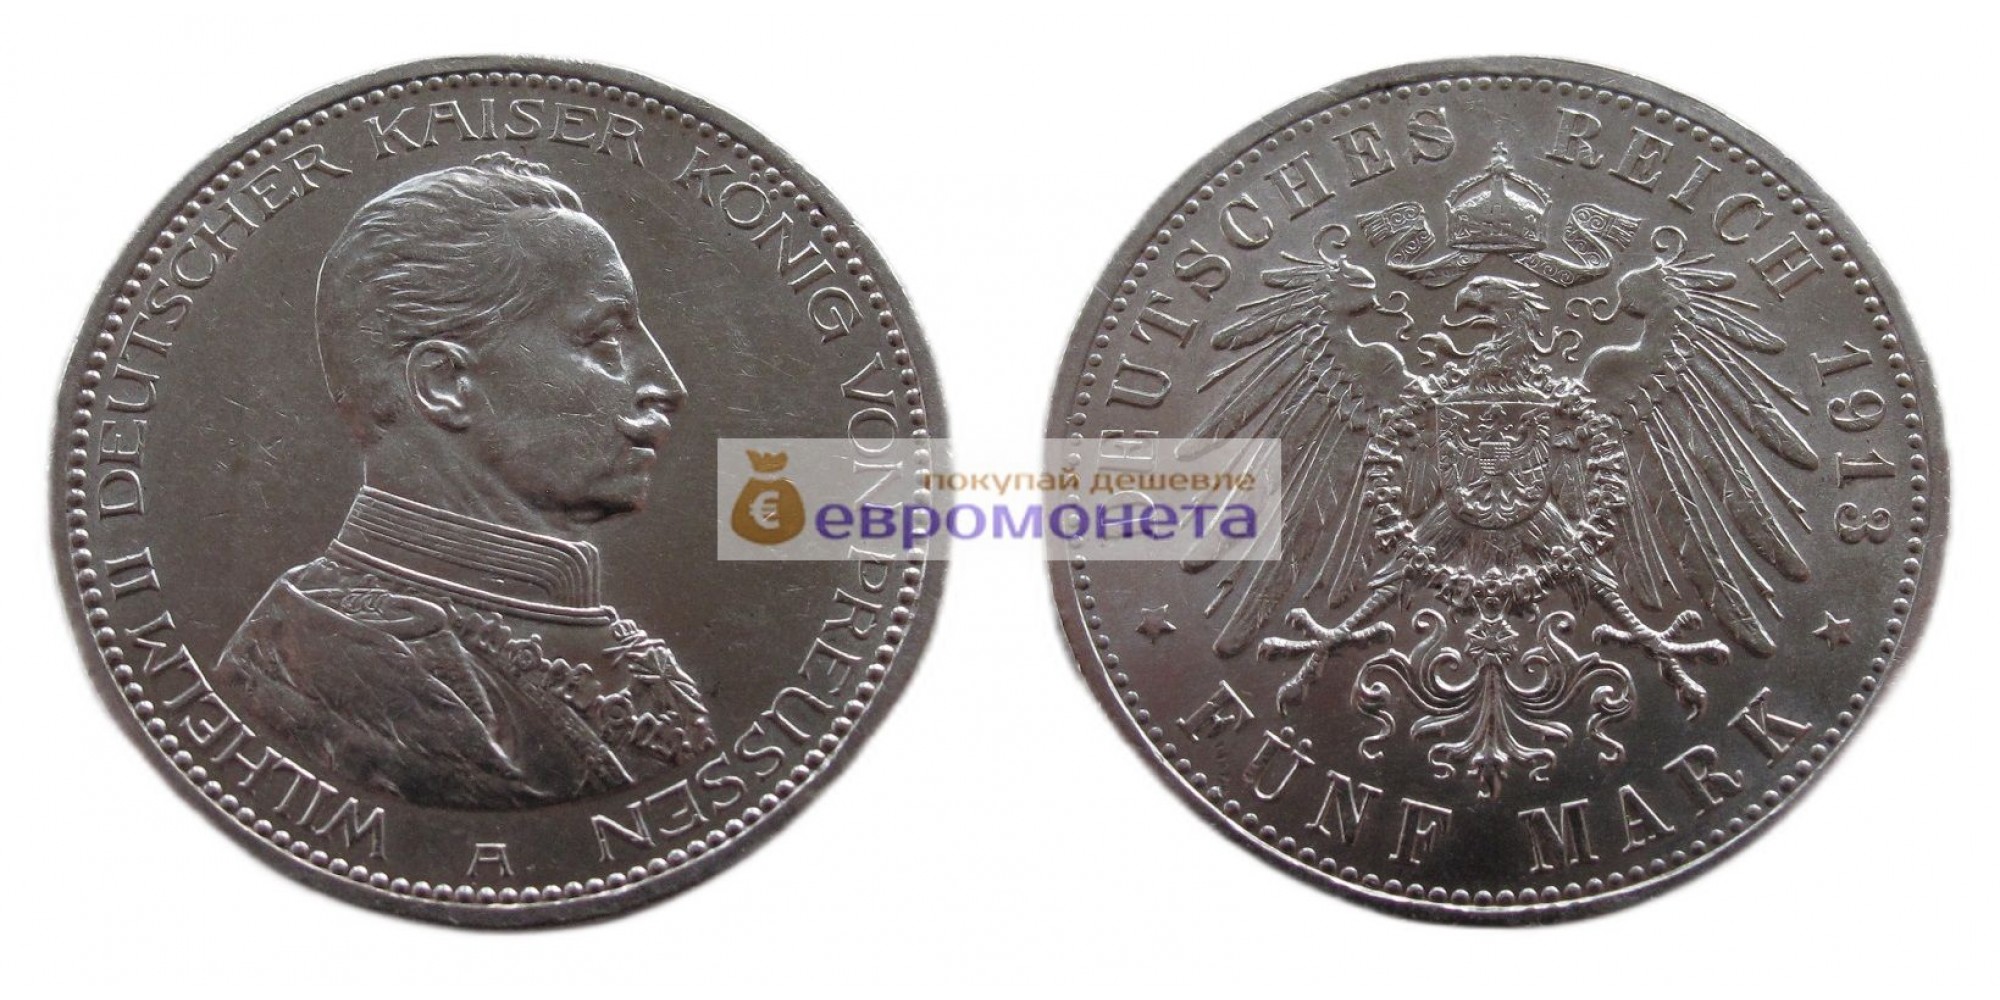 Германская империя Пруссия 5 марок 1913 год "A". Серебро